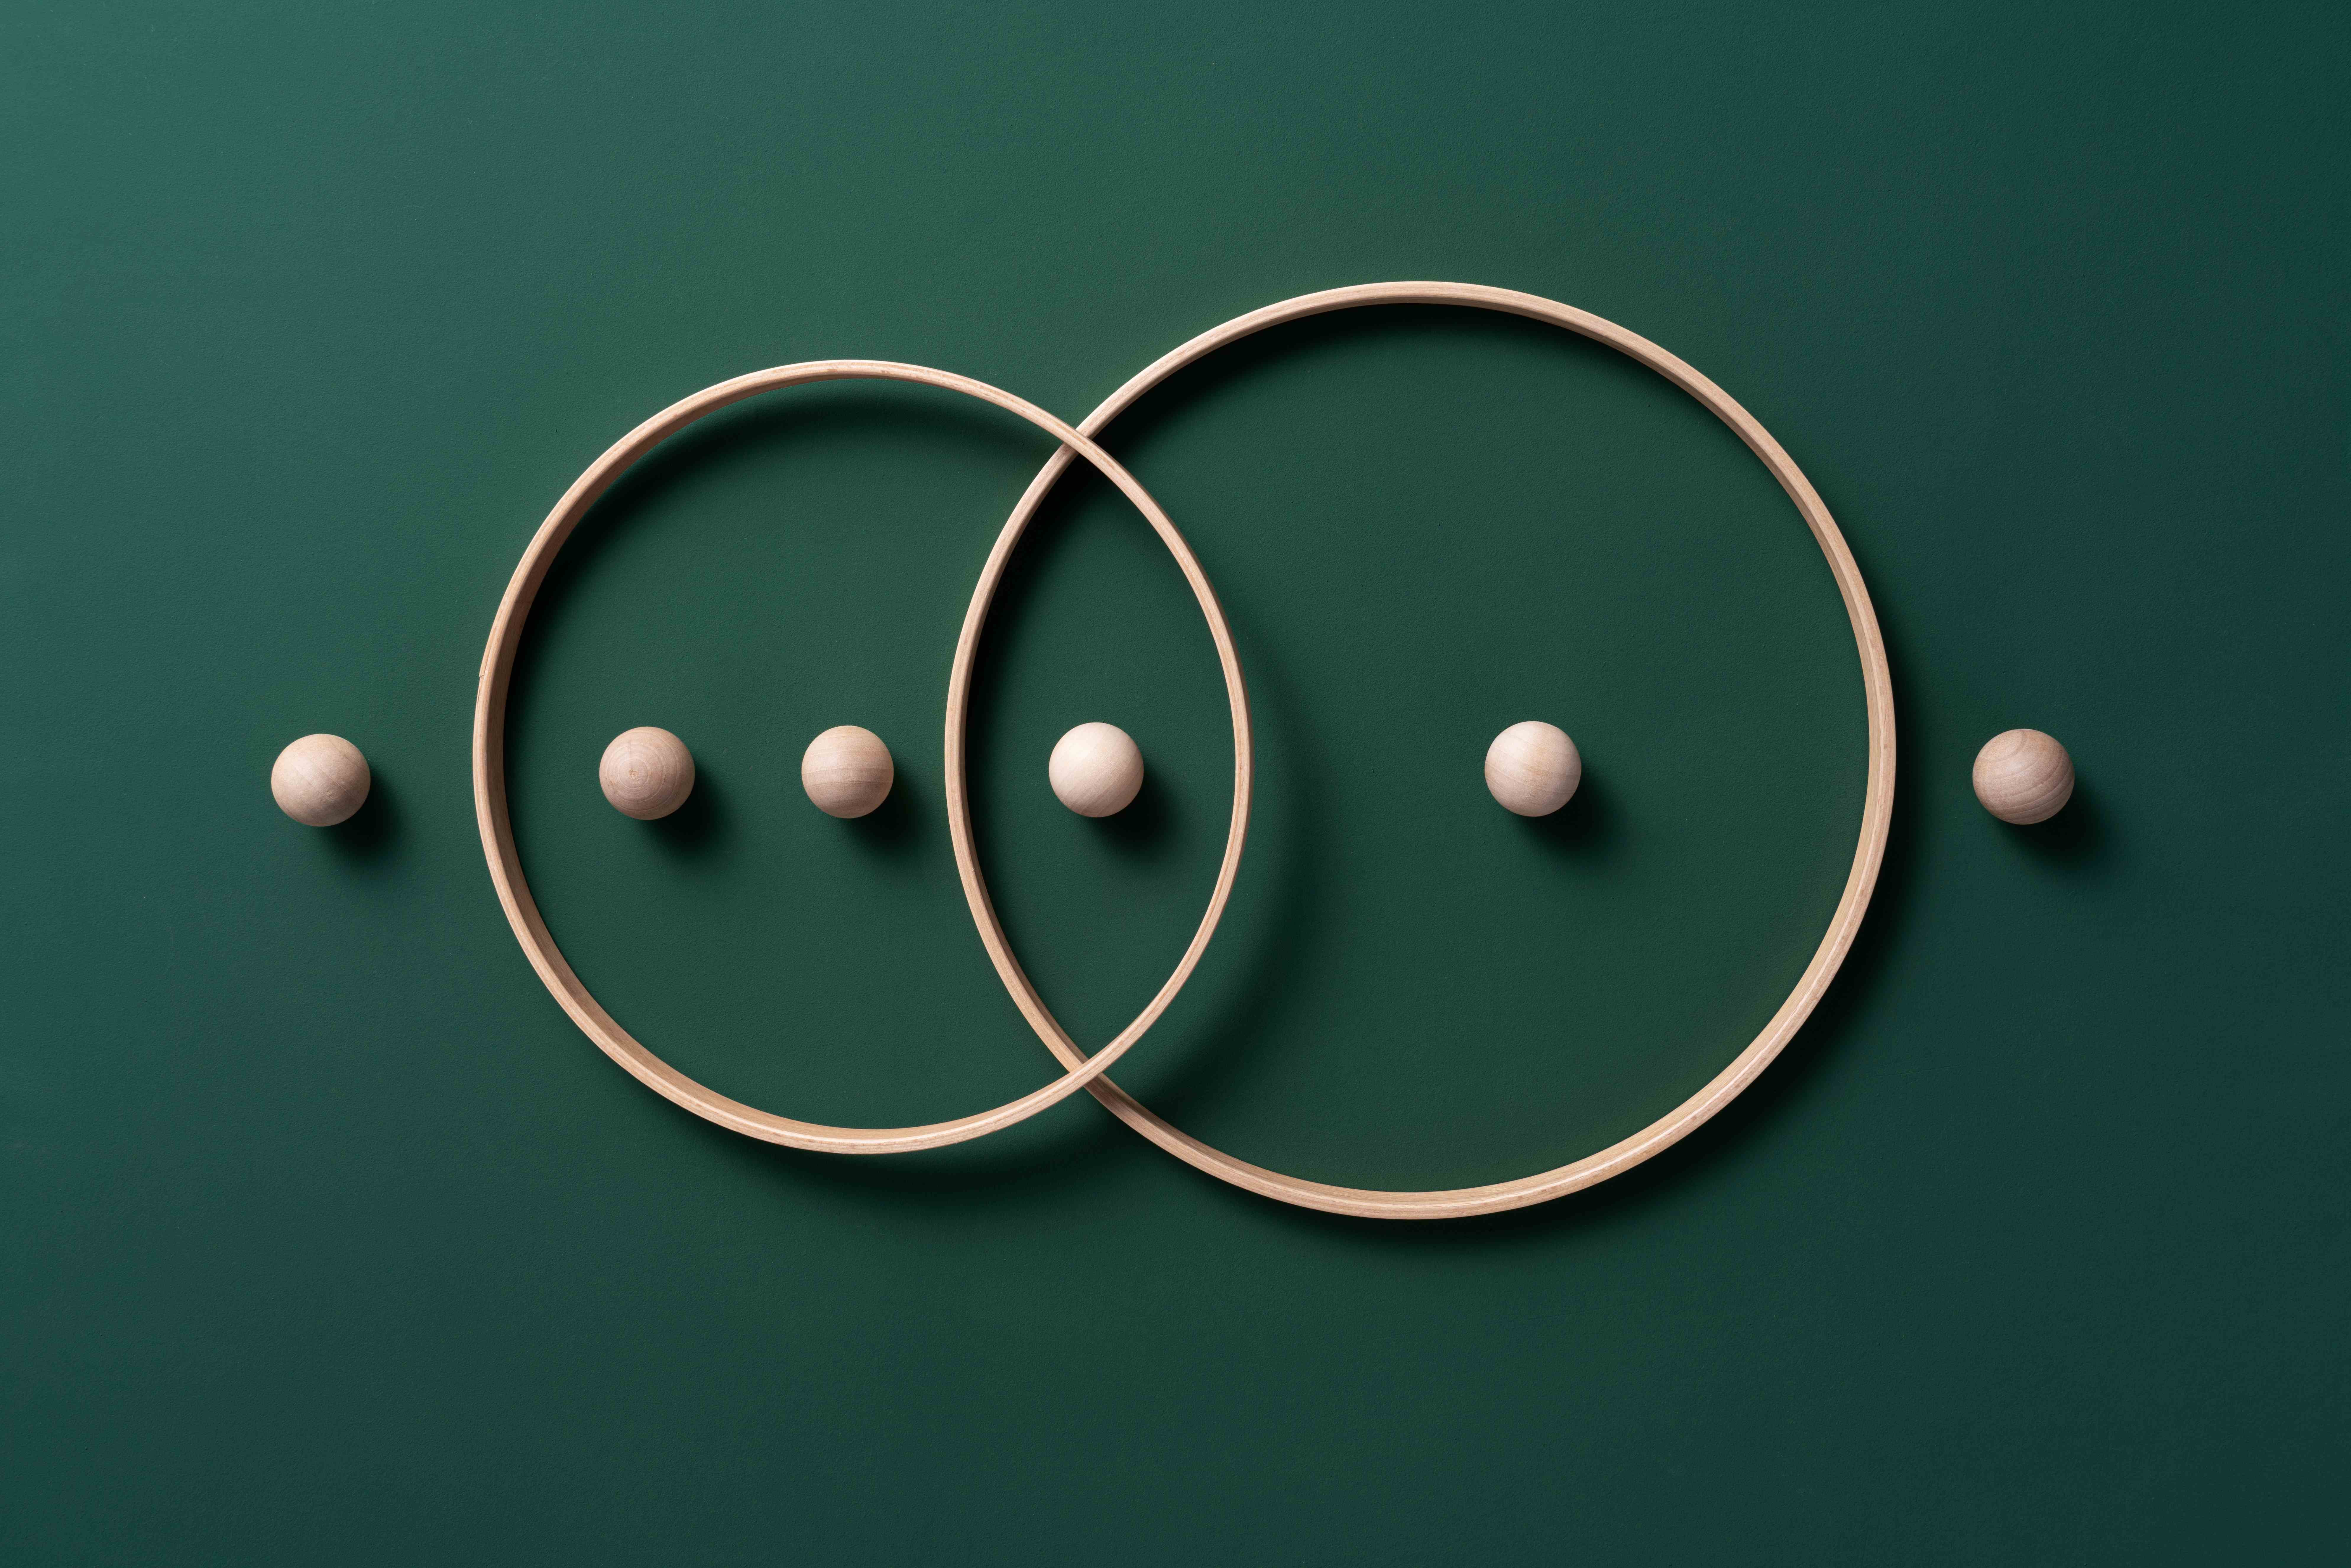 Bild von sich kreuzenden Ringen mit Kugeln auf grünem Hintergrund.